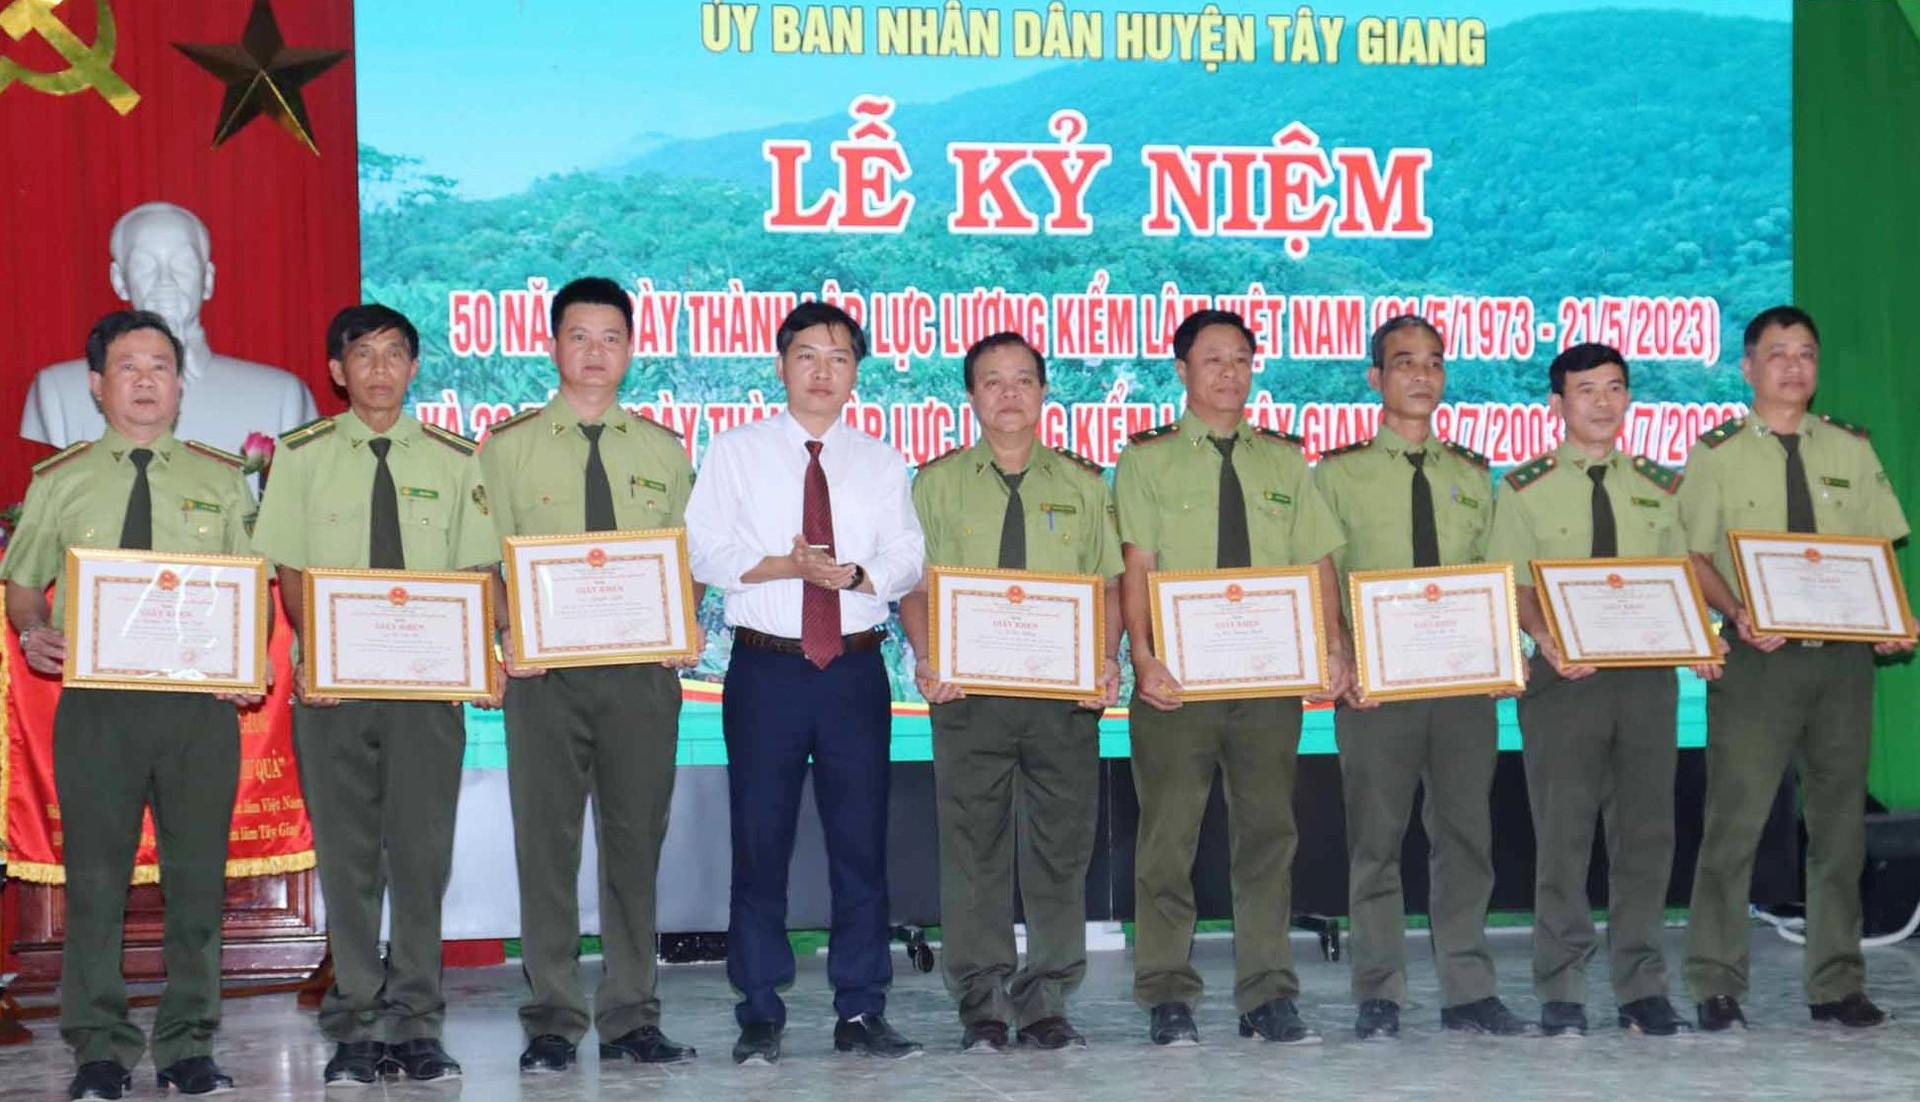 UBND huyện Tây Giang tặng giấy khen các cá nhân có thành tích tốt trong công tác quản lý, bảo vệ và phát triển rừng, giai đoạn 2003-2023. Ảnh H.Thúy